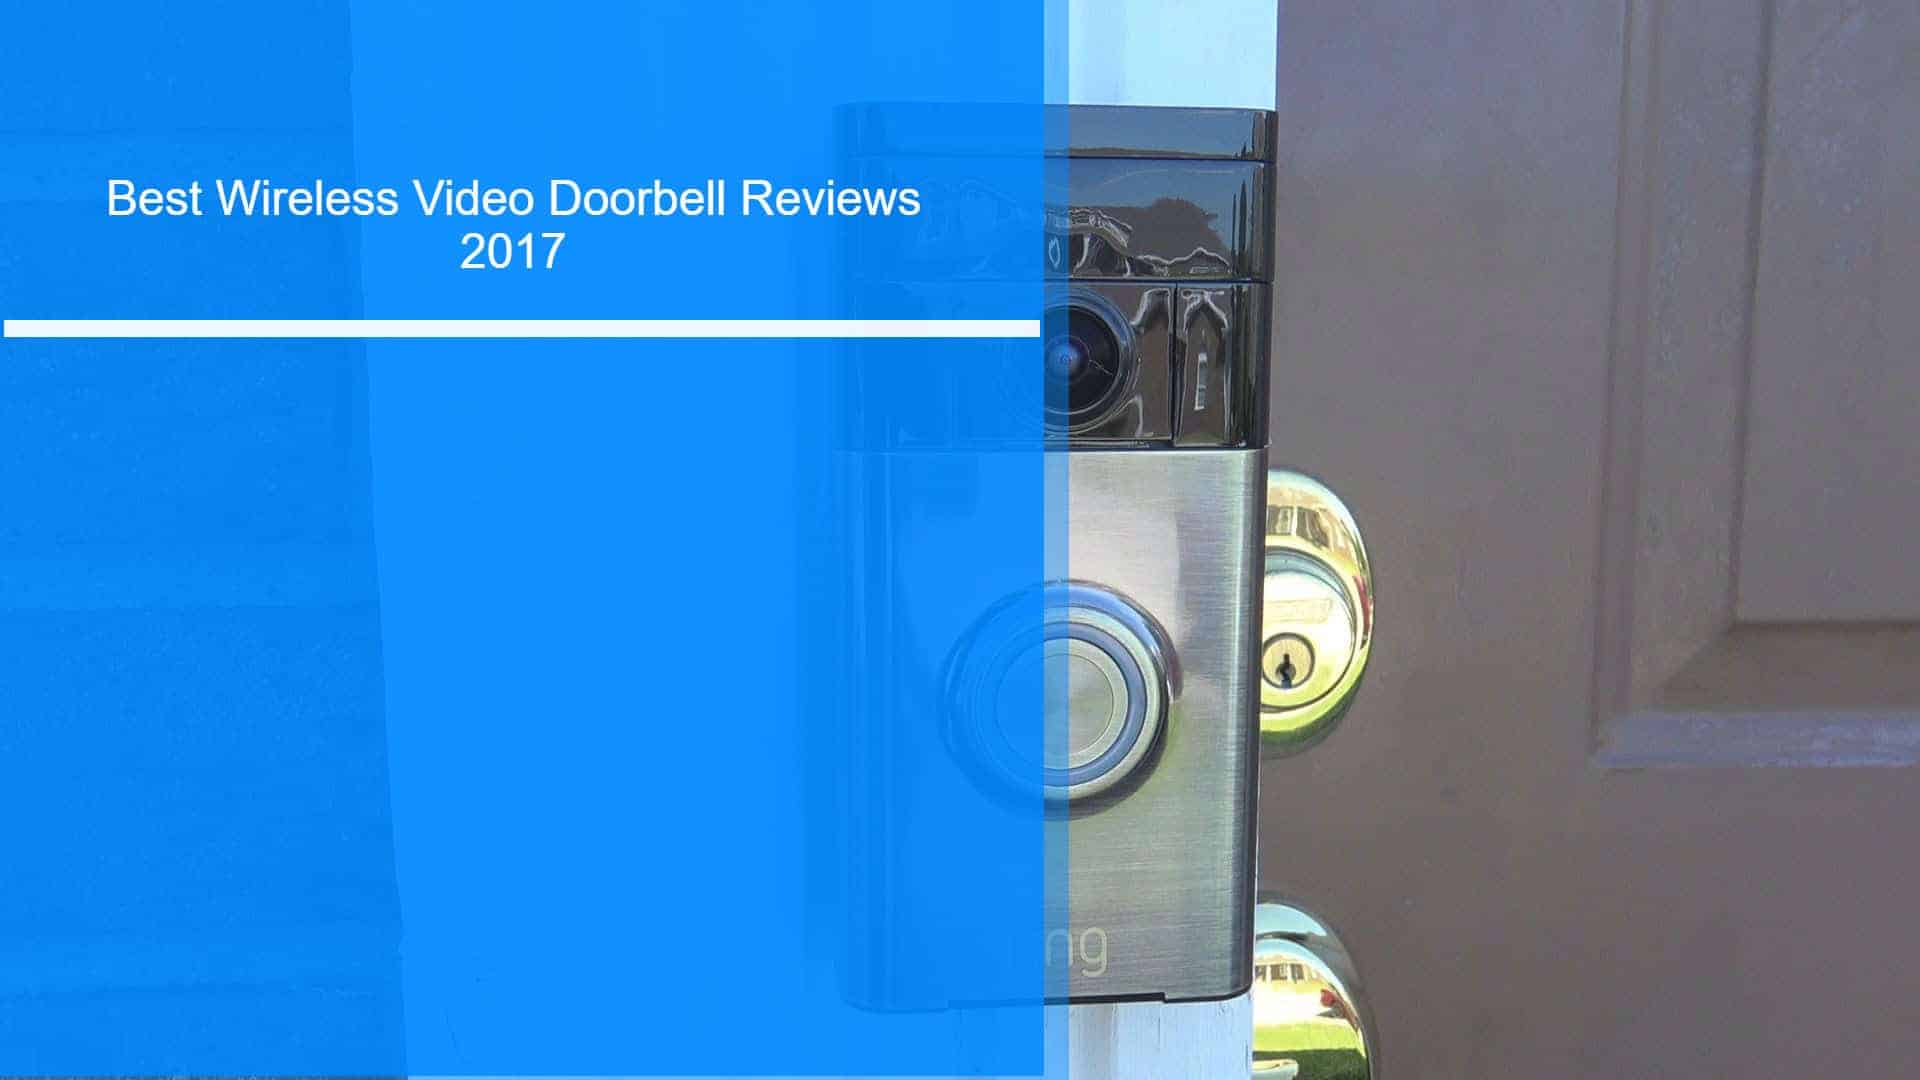 Best wireless video doorbell reviews 2017